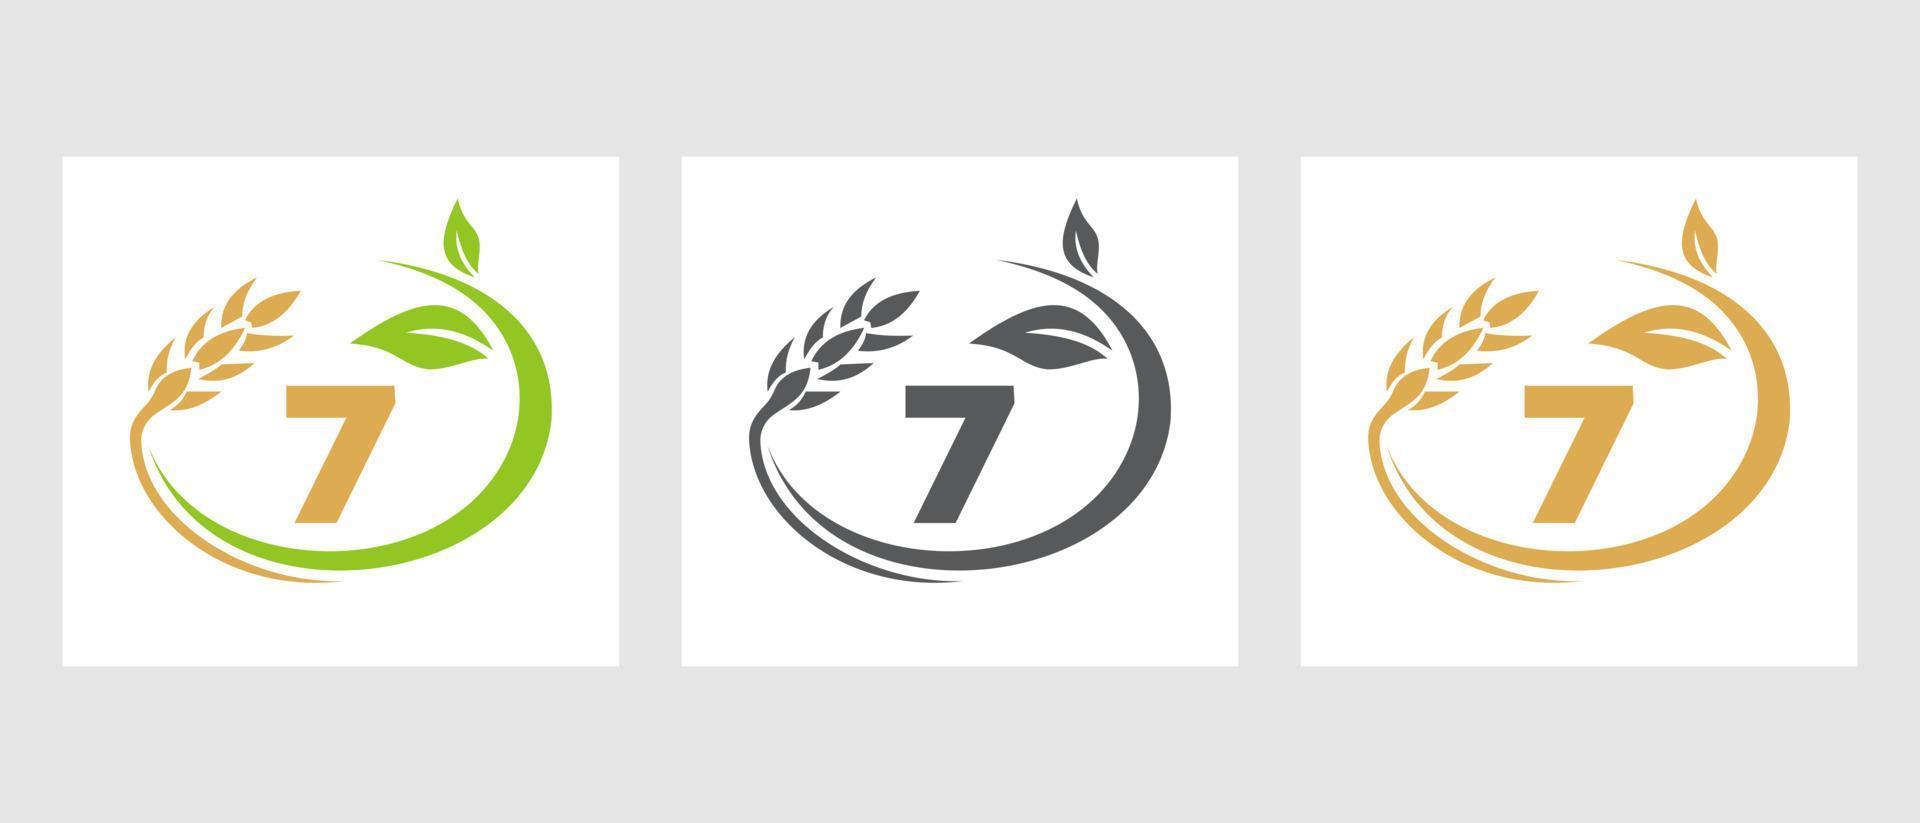 logotipo da agricultura da letra 7. agronegócio, modelo de design de fazenda ecológica vetor